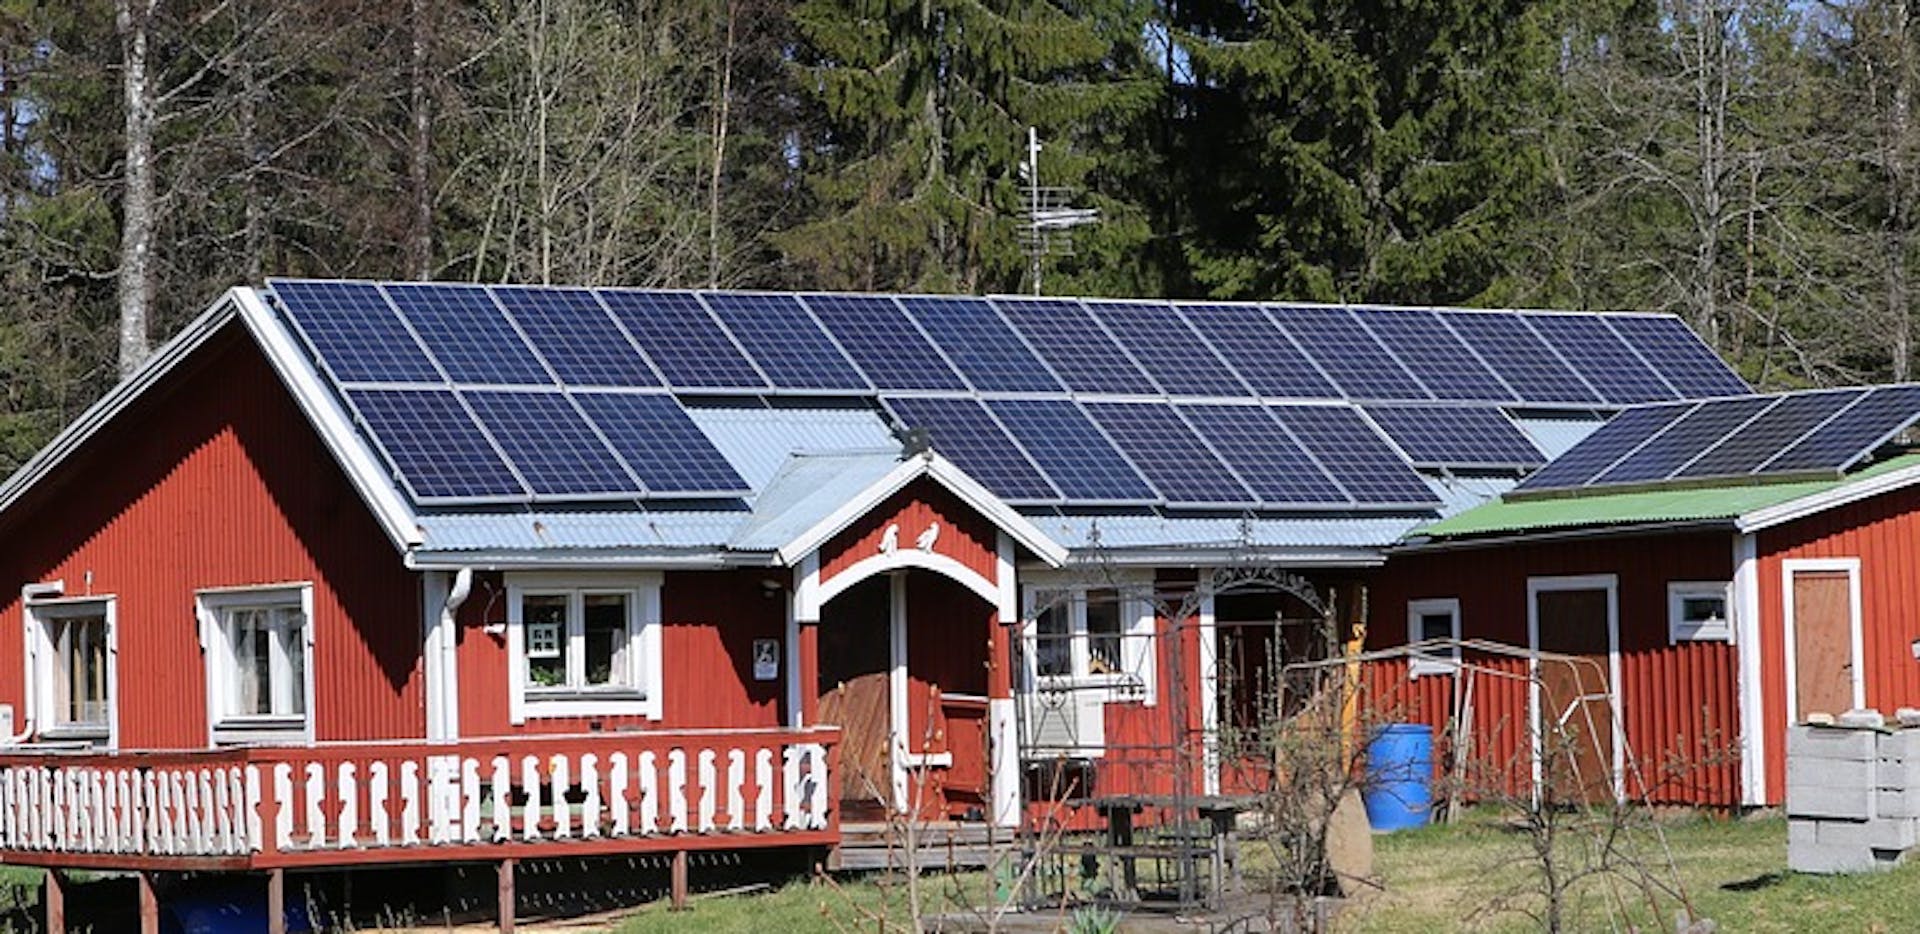 Chauffer sa maison grâce au solaire